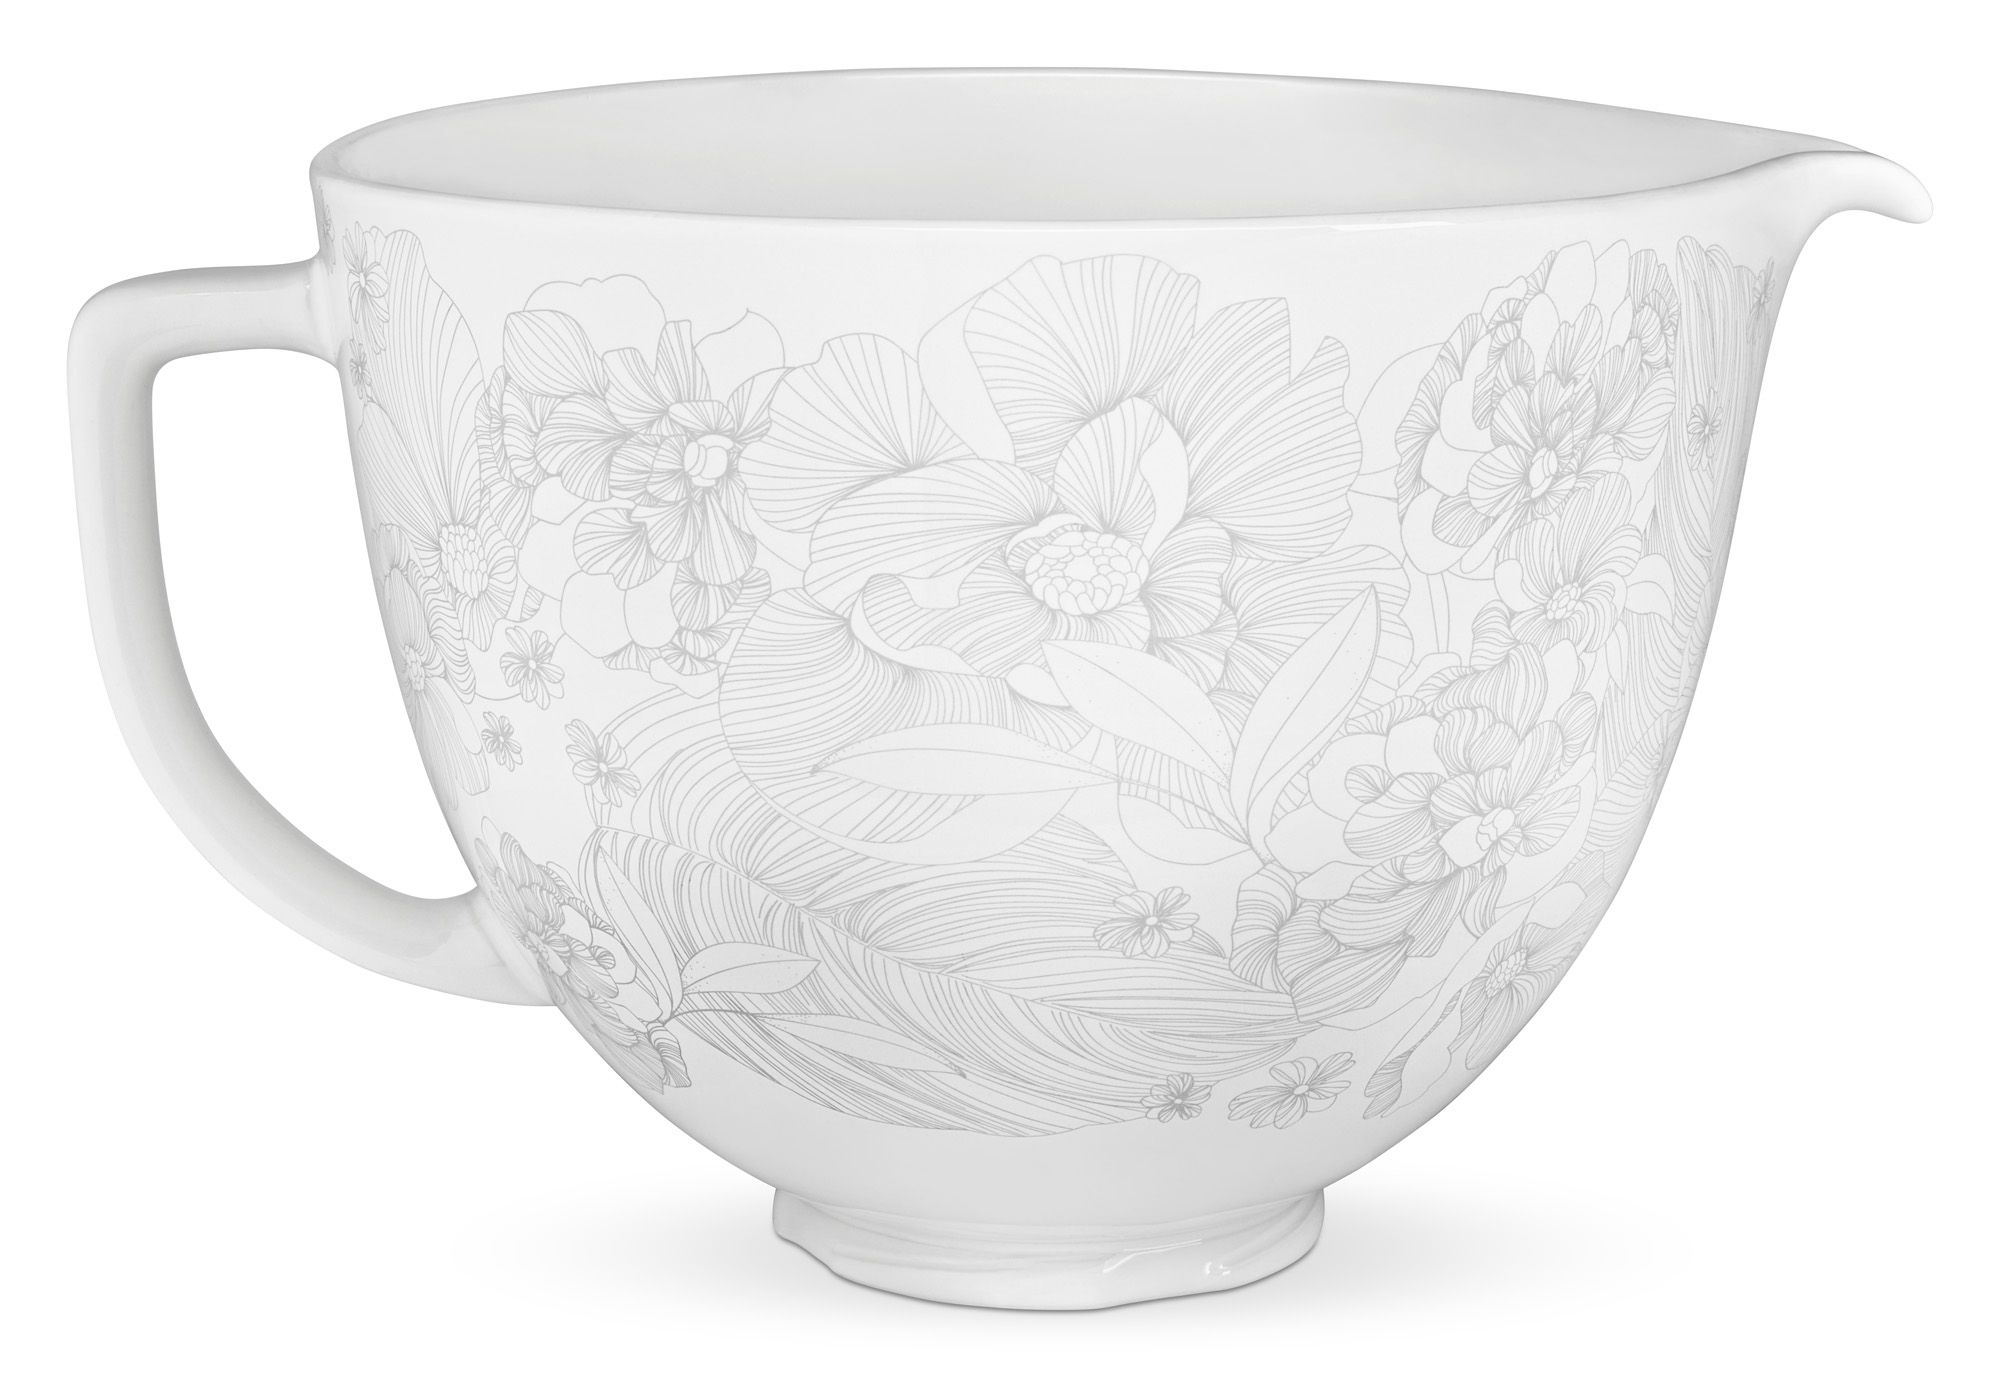 https://hips.hearstapps.com/hmg-prod/images/ka-whispering-floral-ceramic-bowl-limbo-1551824070.jpg